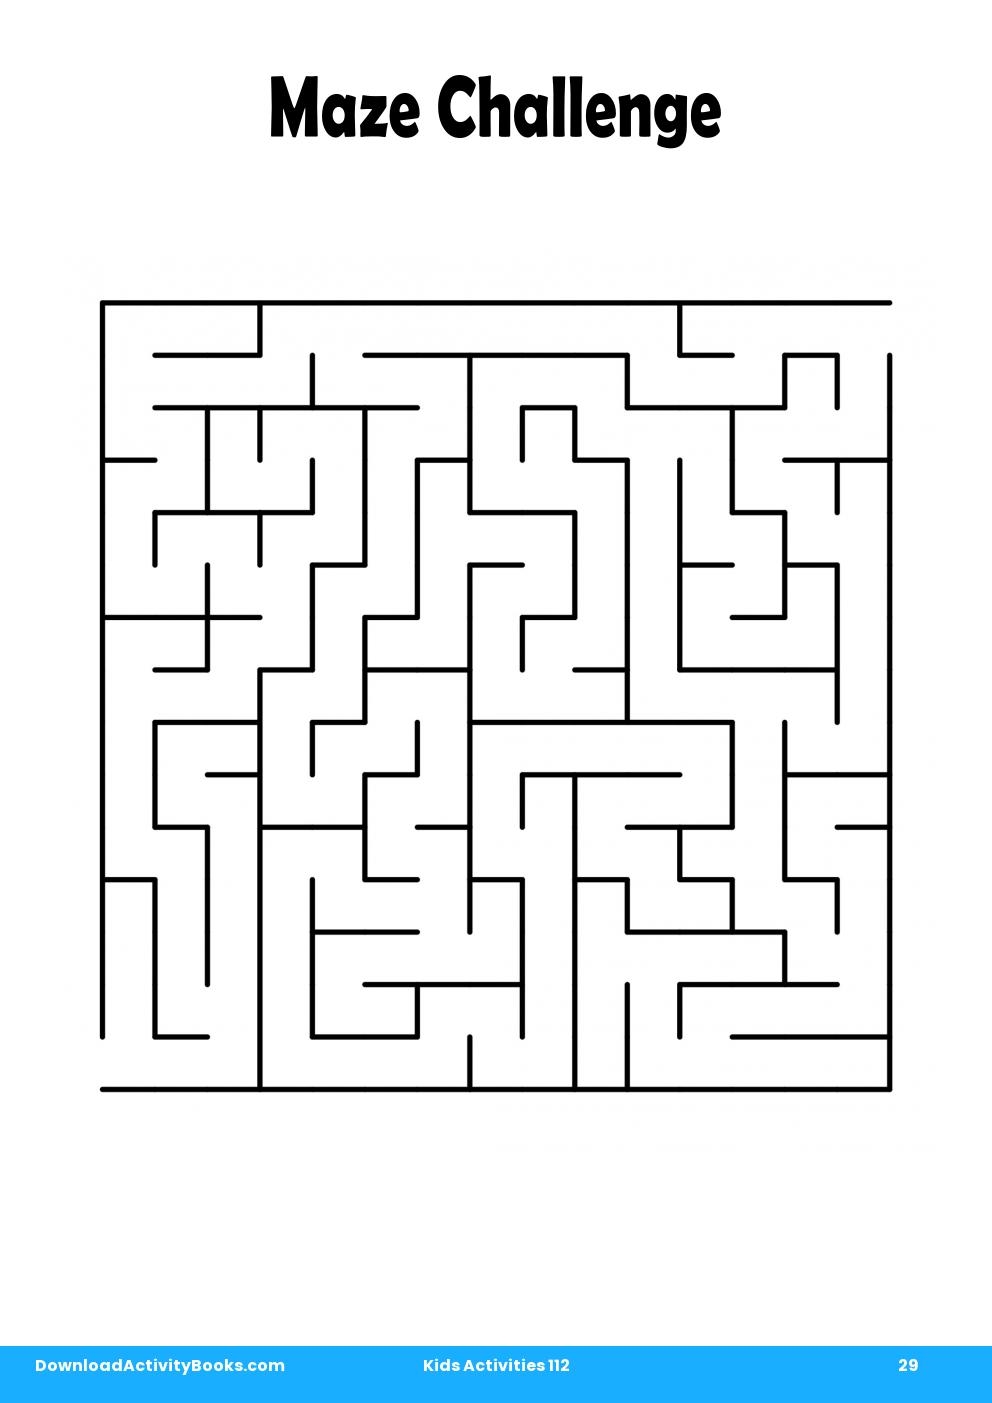 Maze Challenge in Kids Activities 112